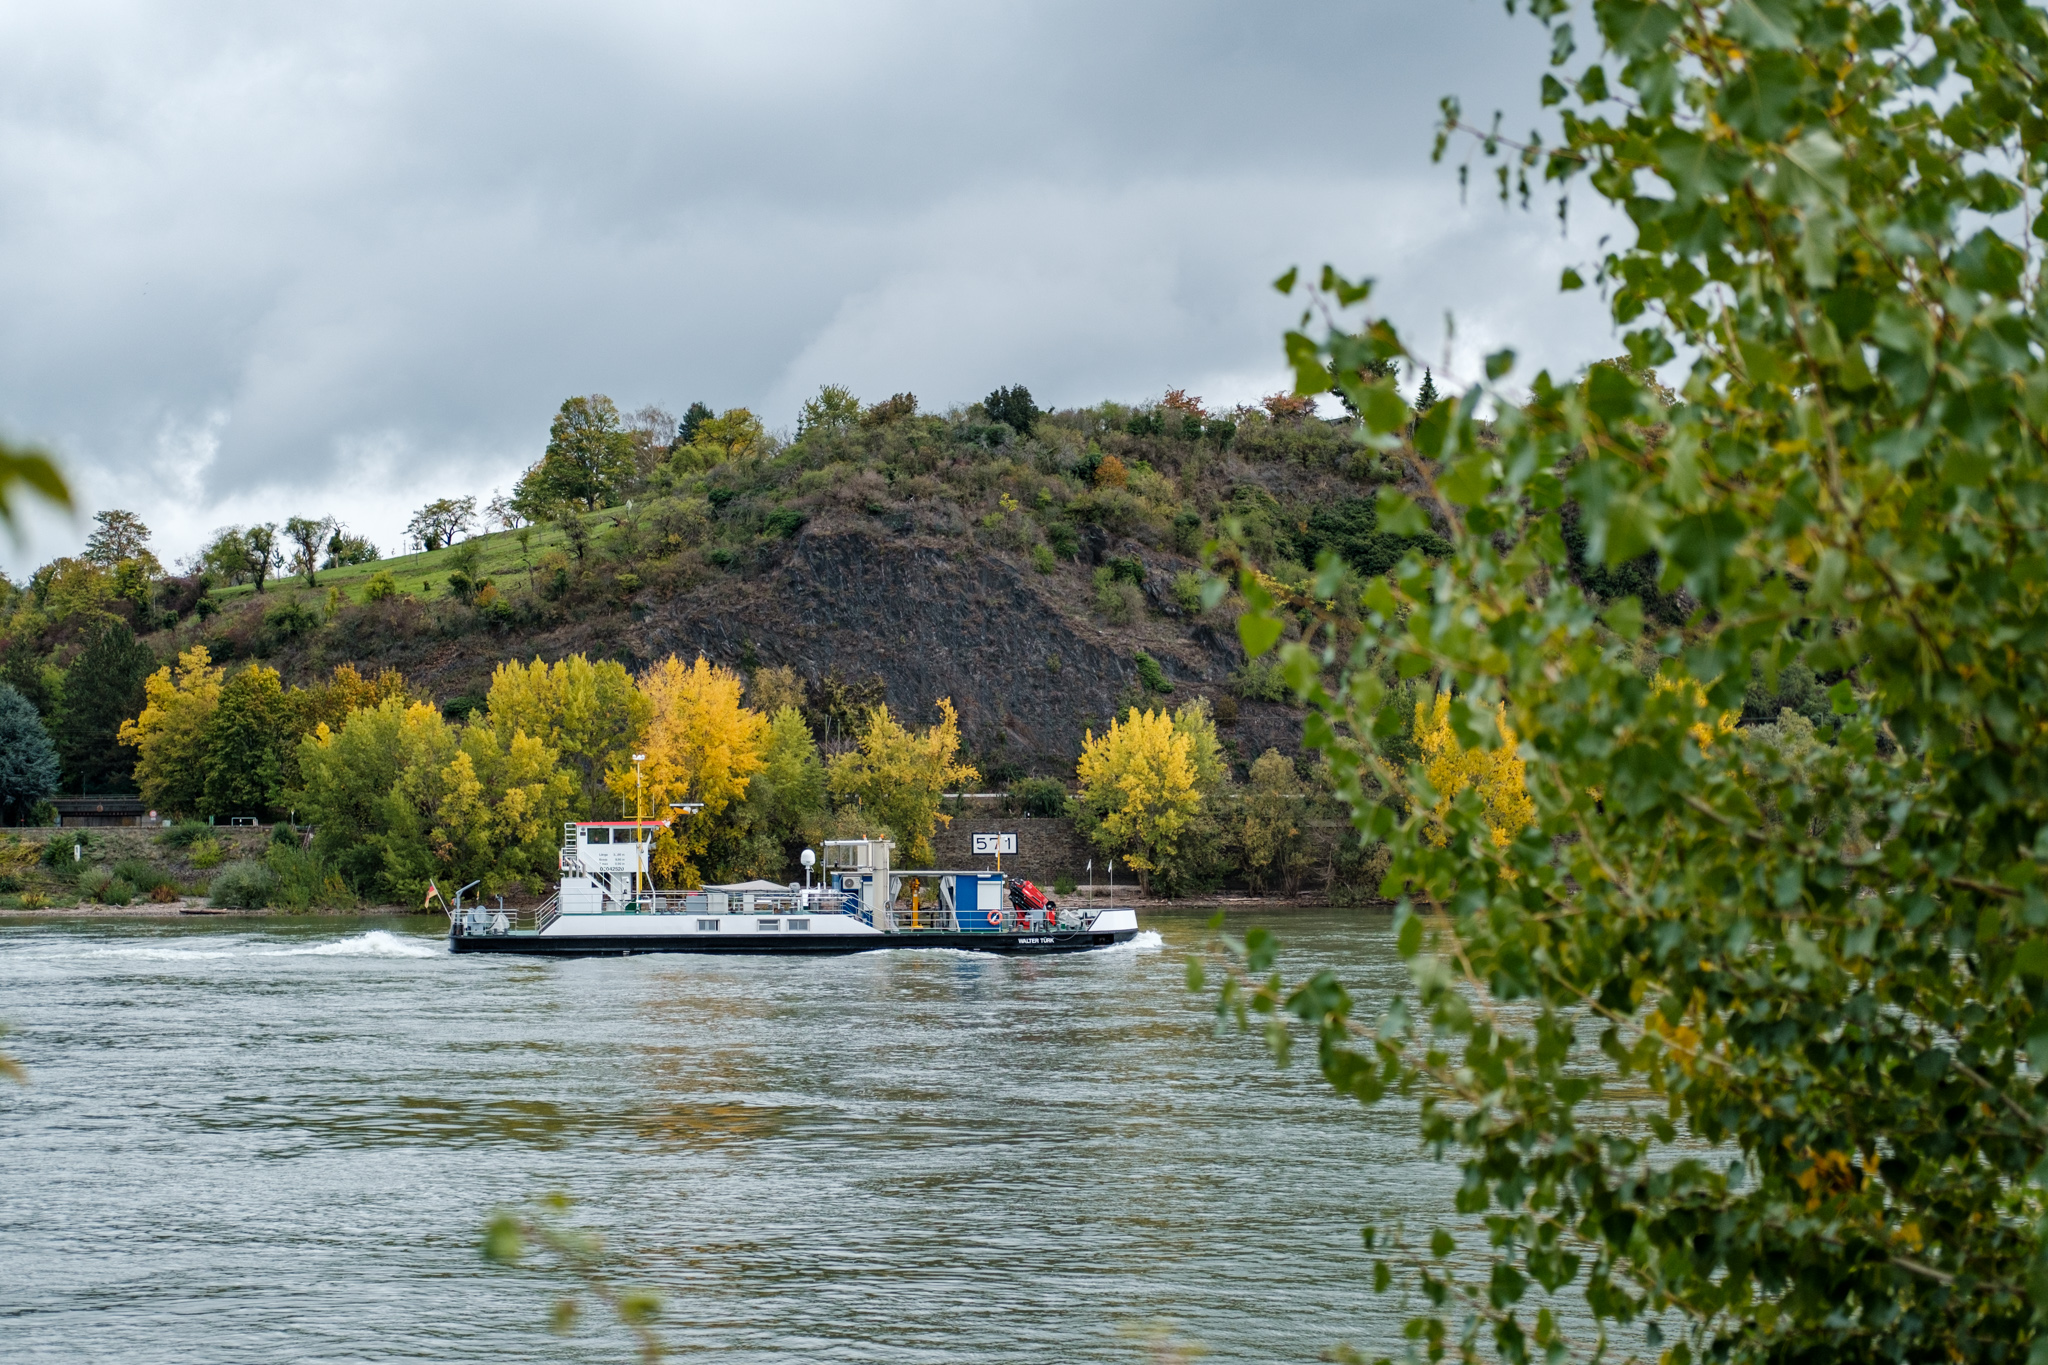 Ein Messschiff auf dem Rhein, im Hintergrund sind herbstlich gelb gefärbte Bäume.